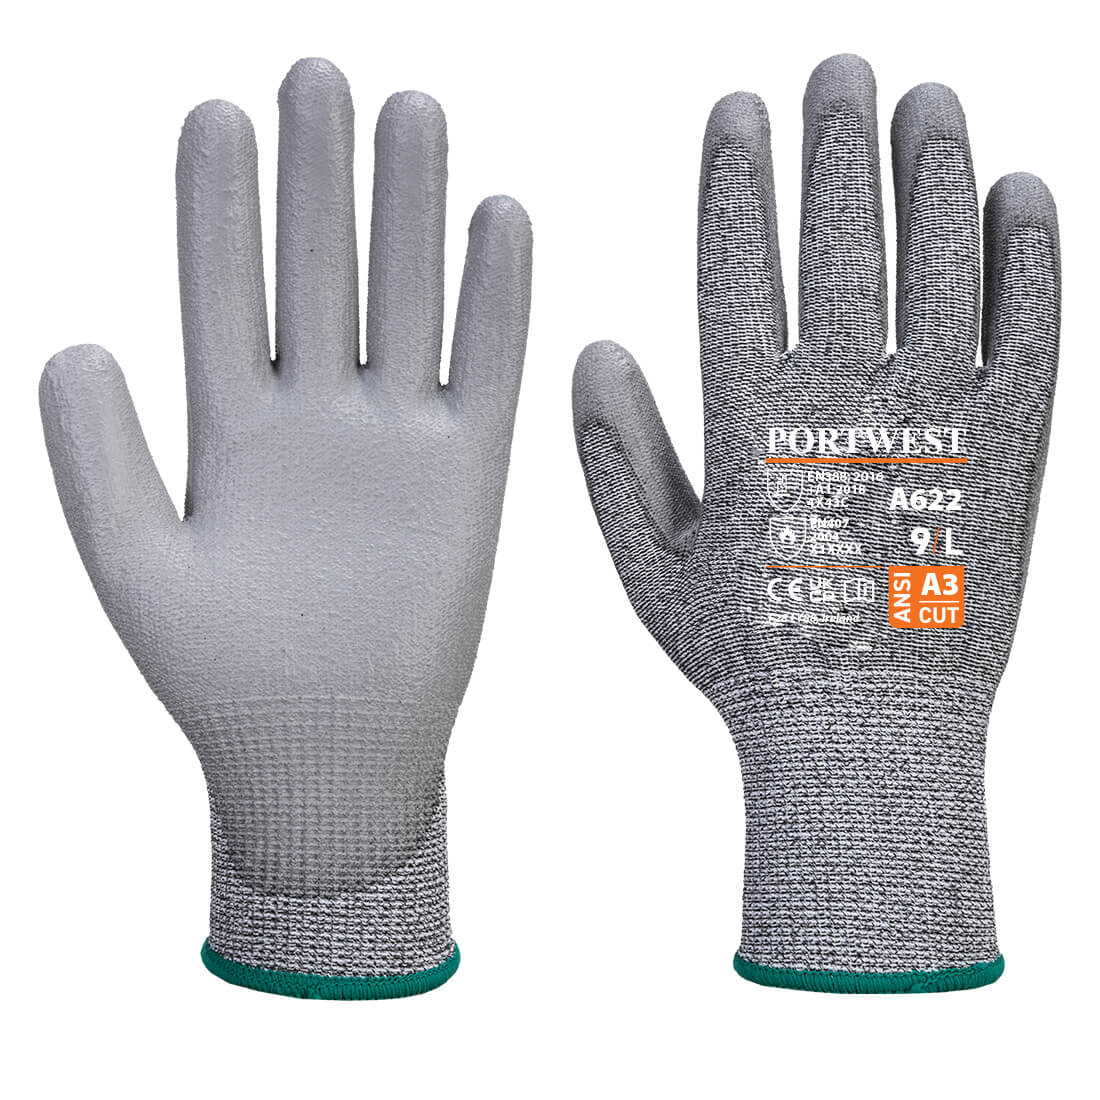 Portwest A622 - MR Cut PU Palm Glove - Grey - Large (Size 9)